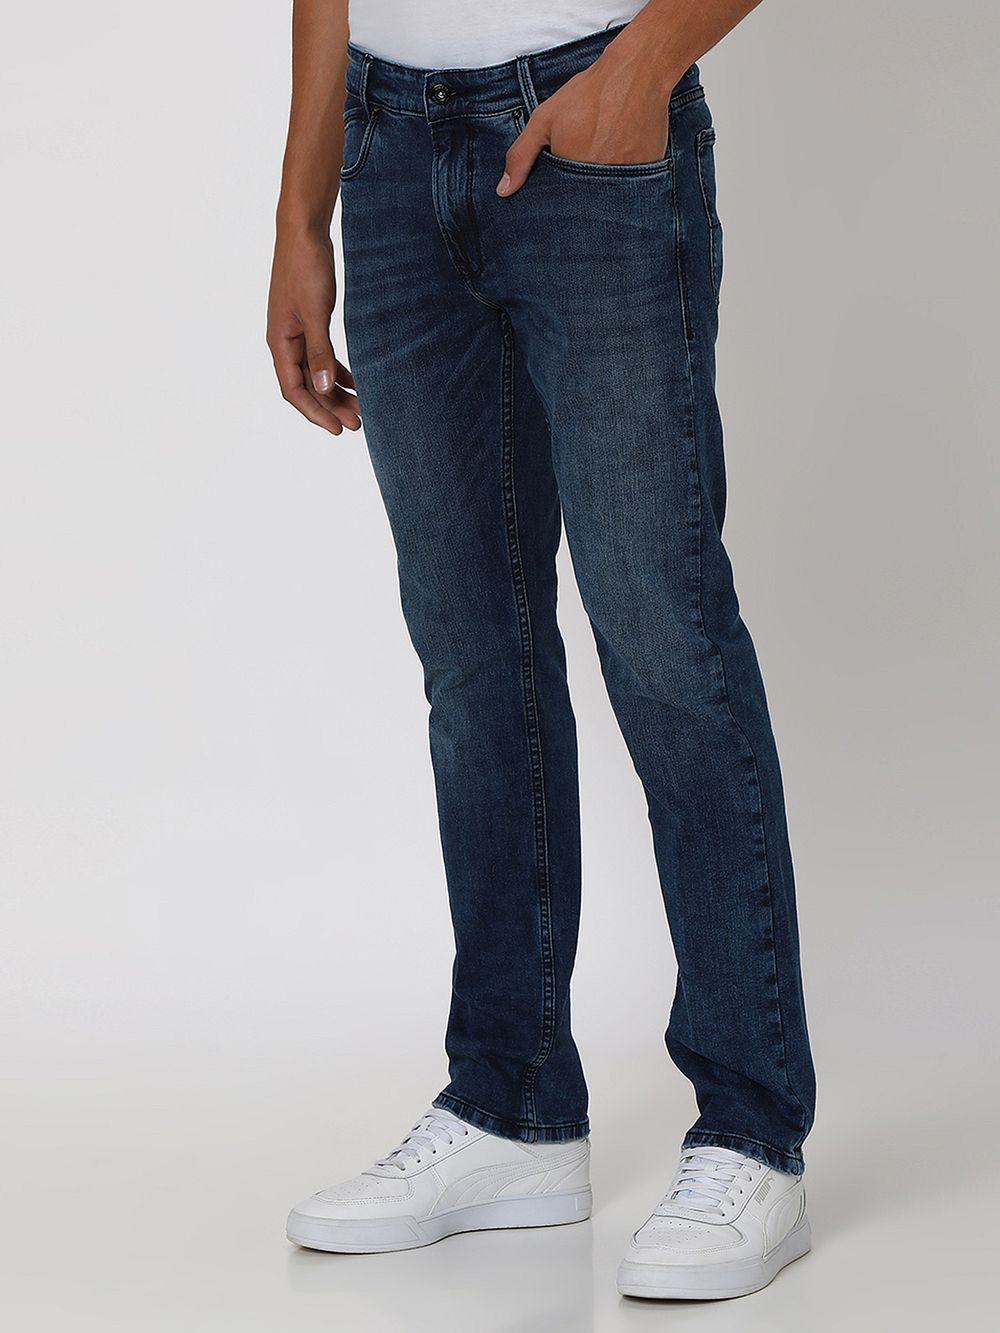 Dark Indigo Blue Straight Fit Originals Stretch Jeans